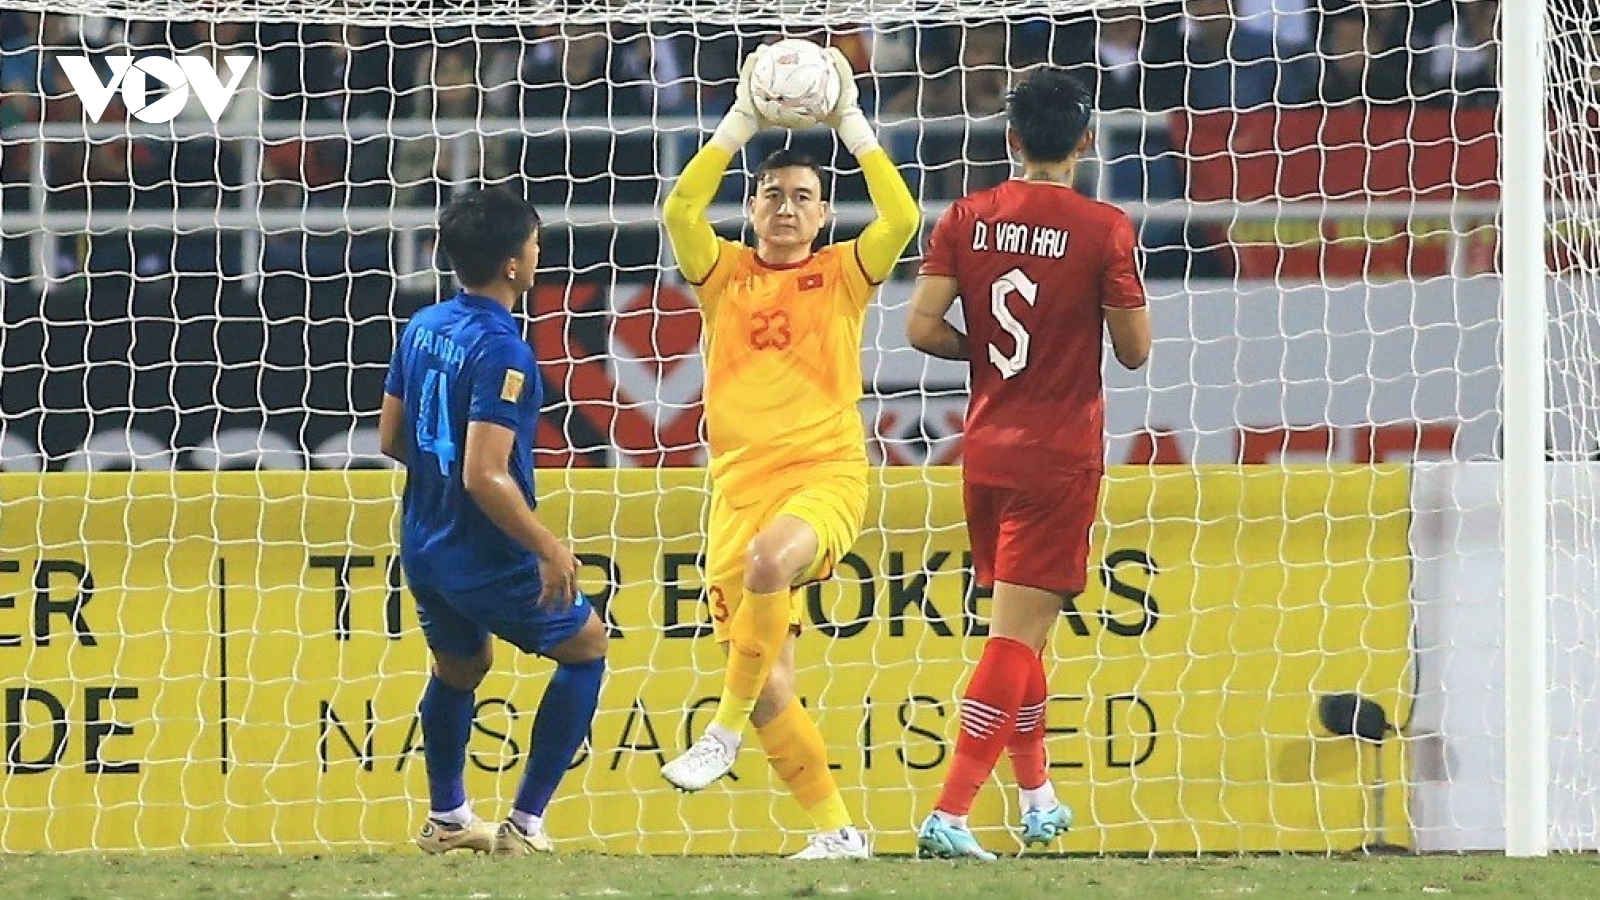 ĐT Việt Nam đổi màu áo cho thủ môn Văn Lâm để tránh “vận đen” ở chung kết lượt về